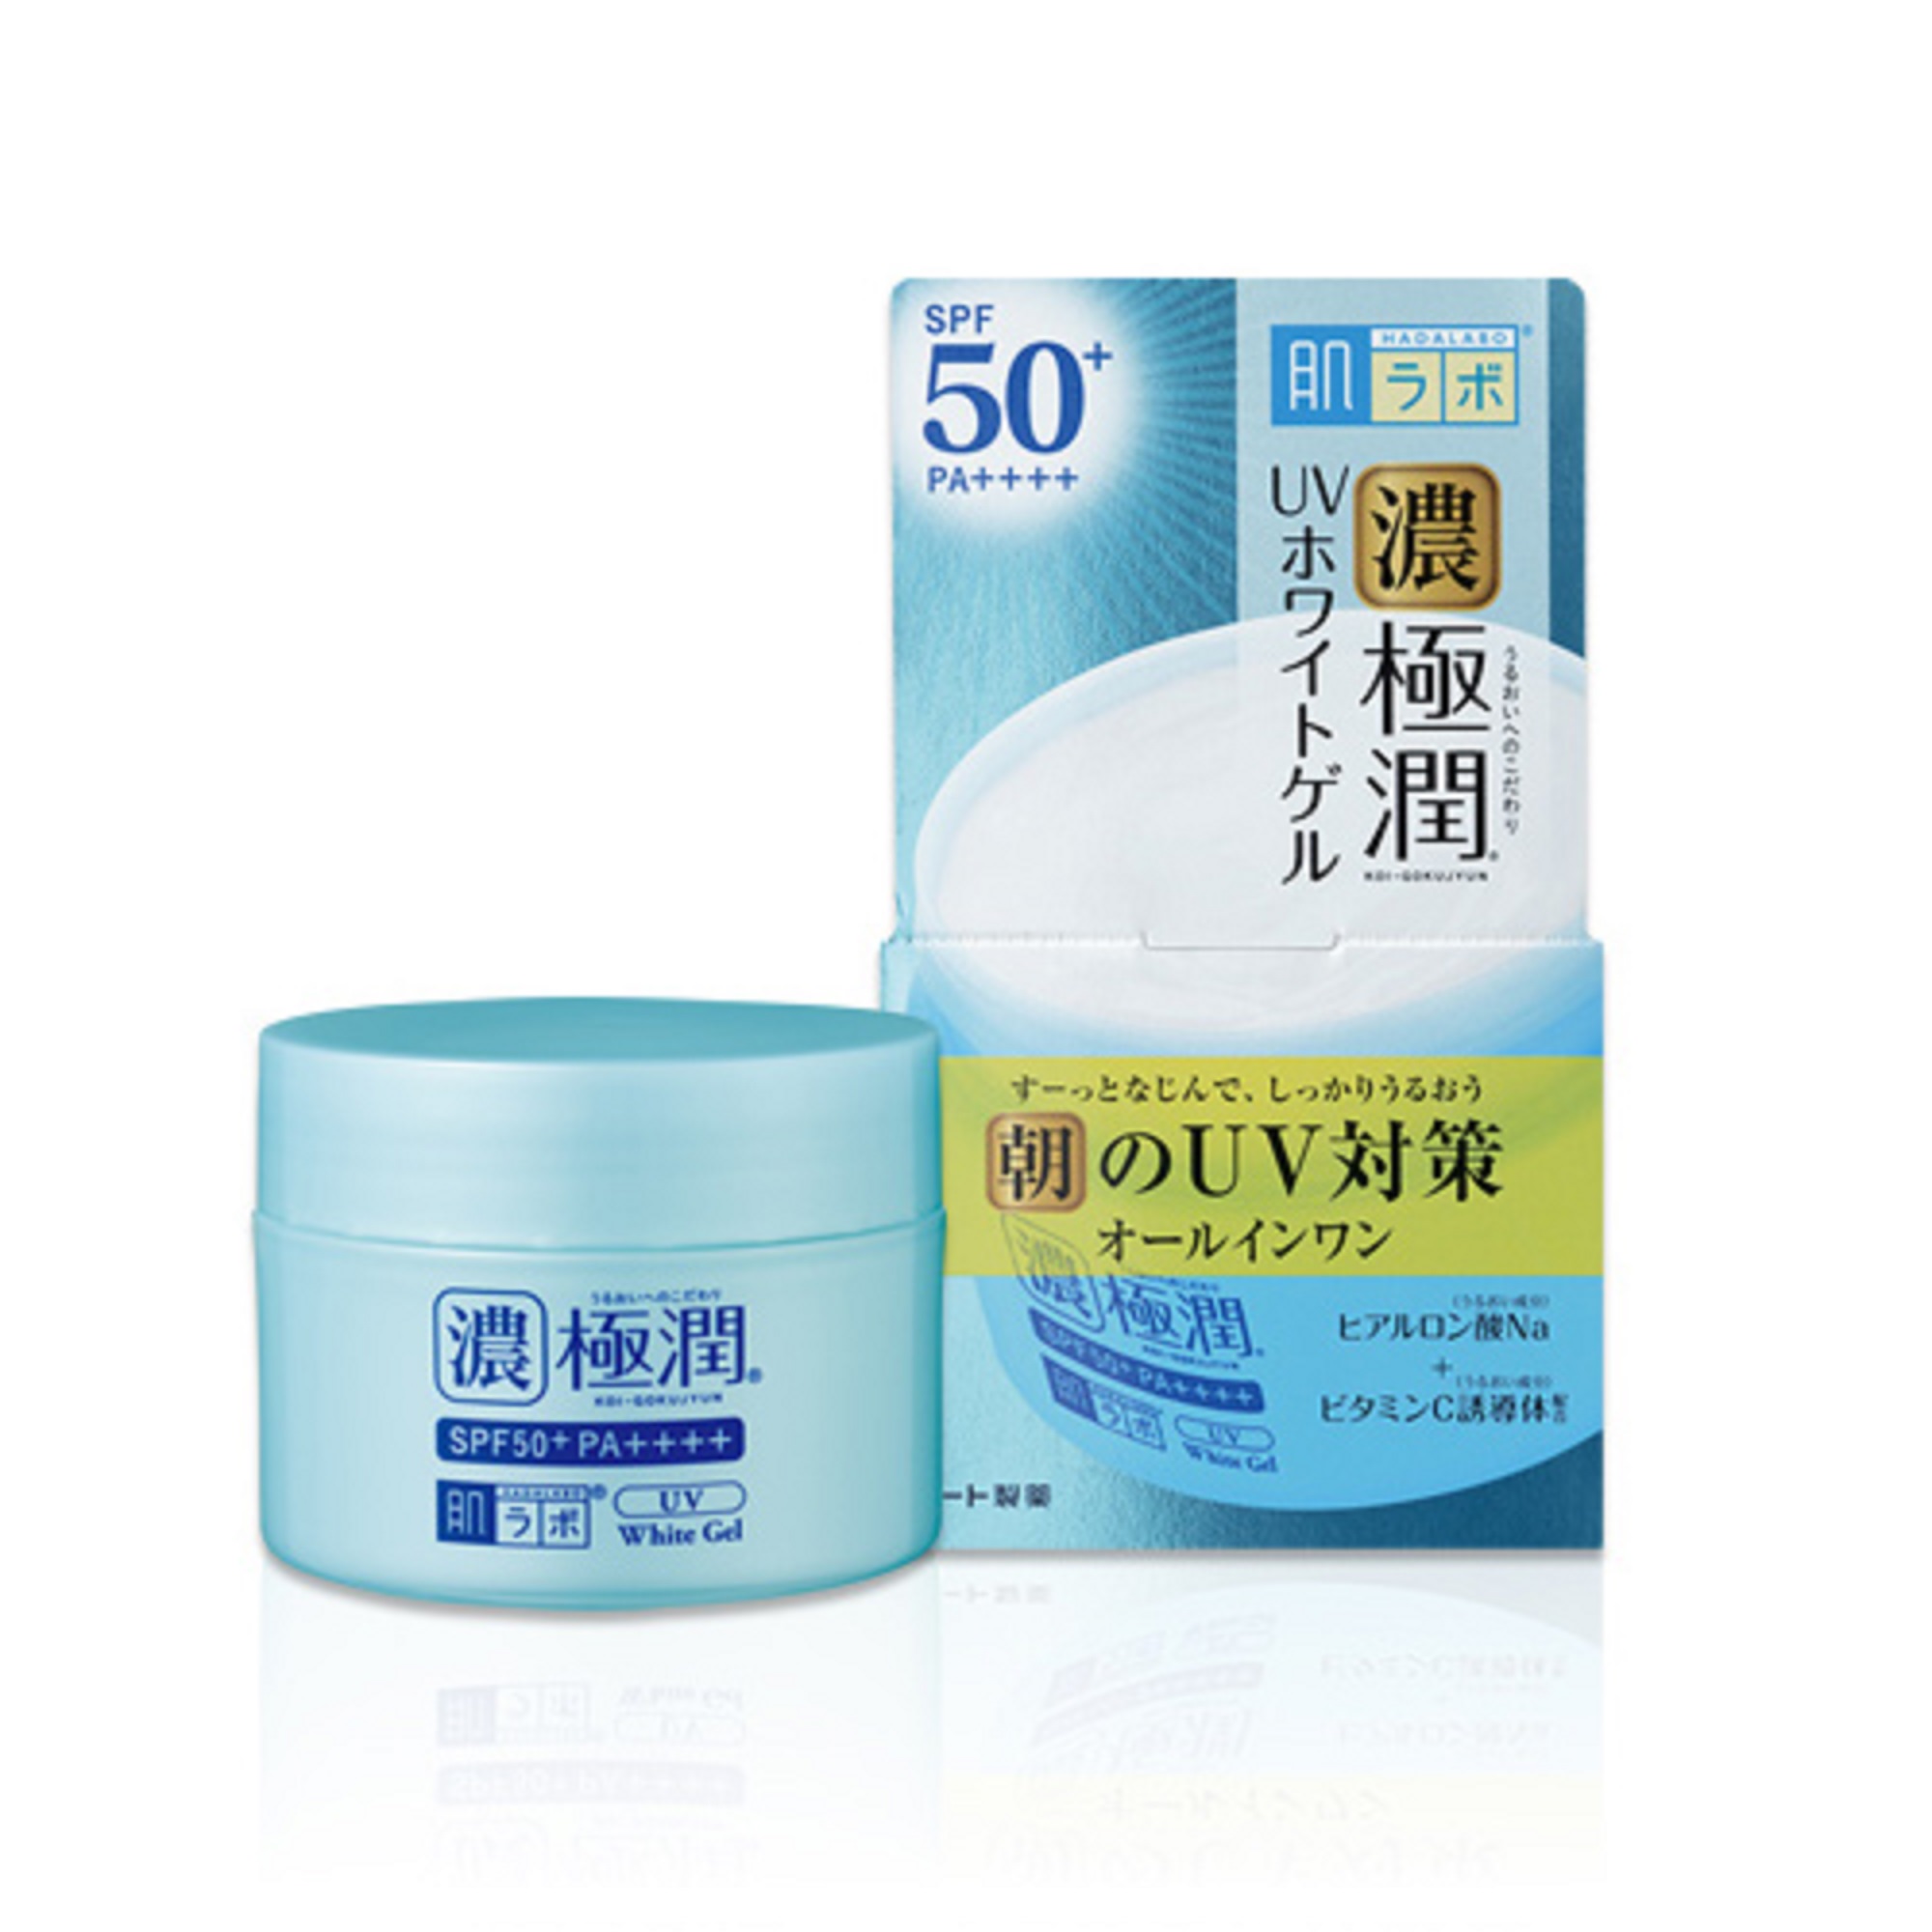 Kem dưỡng ẩm chống nắng ban ngày Hada Labo Koi-Gokujyun UV White Gel SPF50+ PA++++ 90g